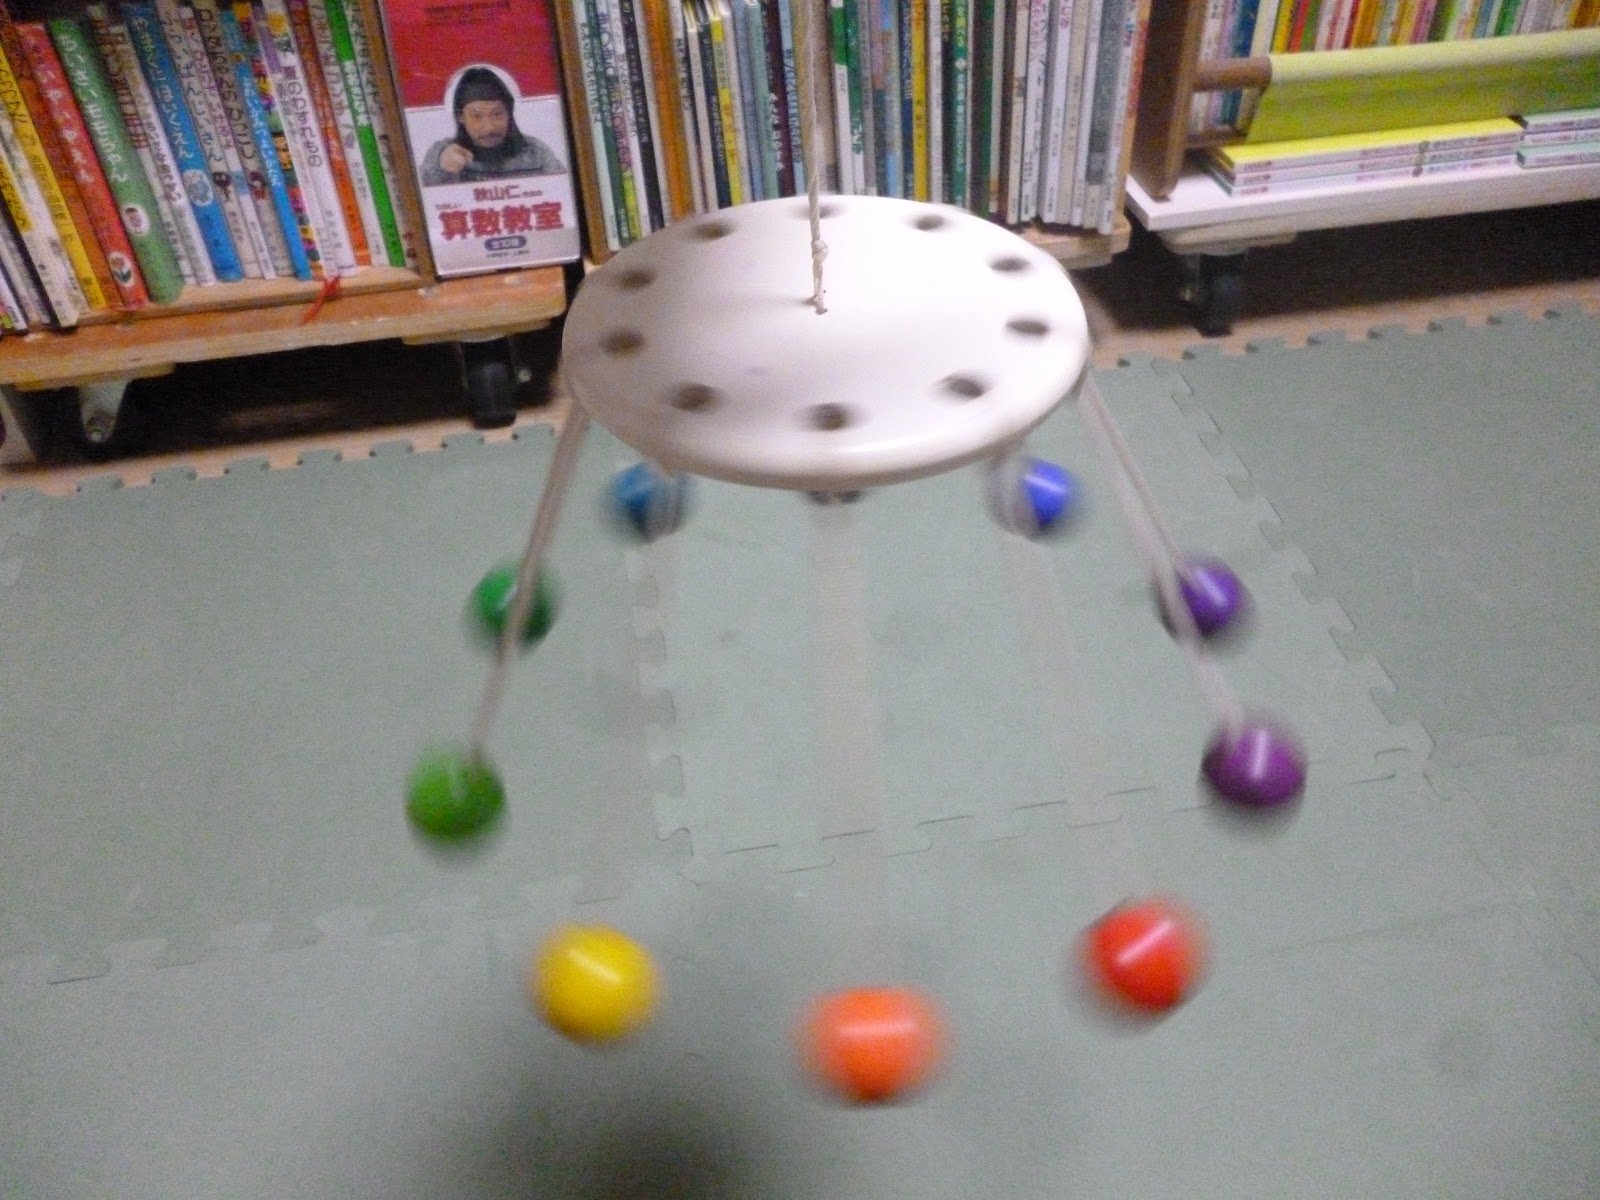 絵本と積木のひろば 福岡 あかちゃん童具ケルンボールで遊びましょう